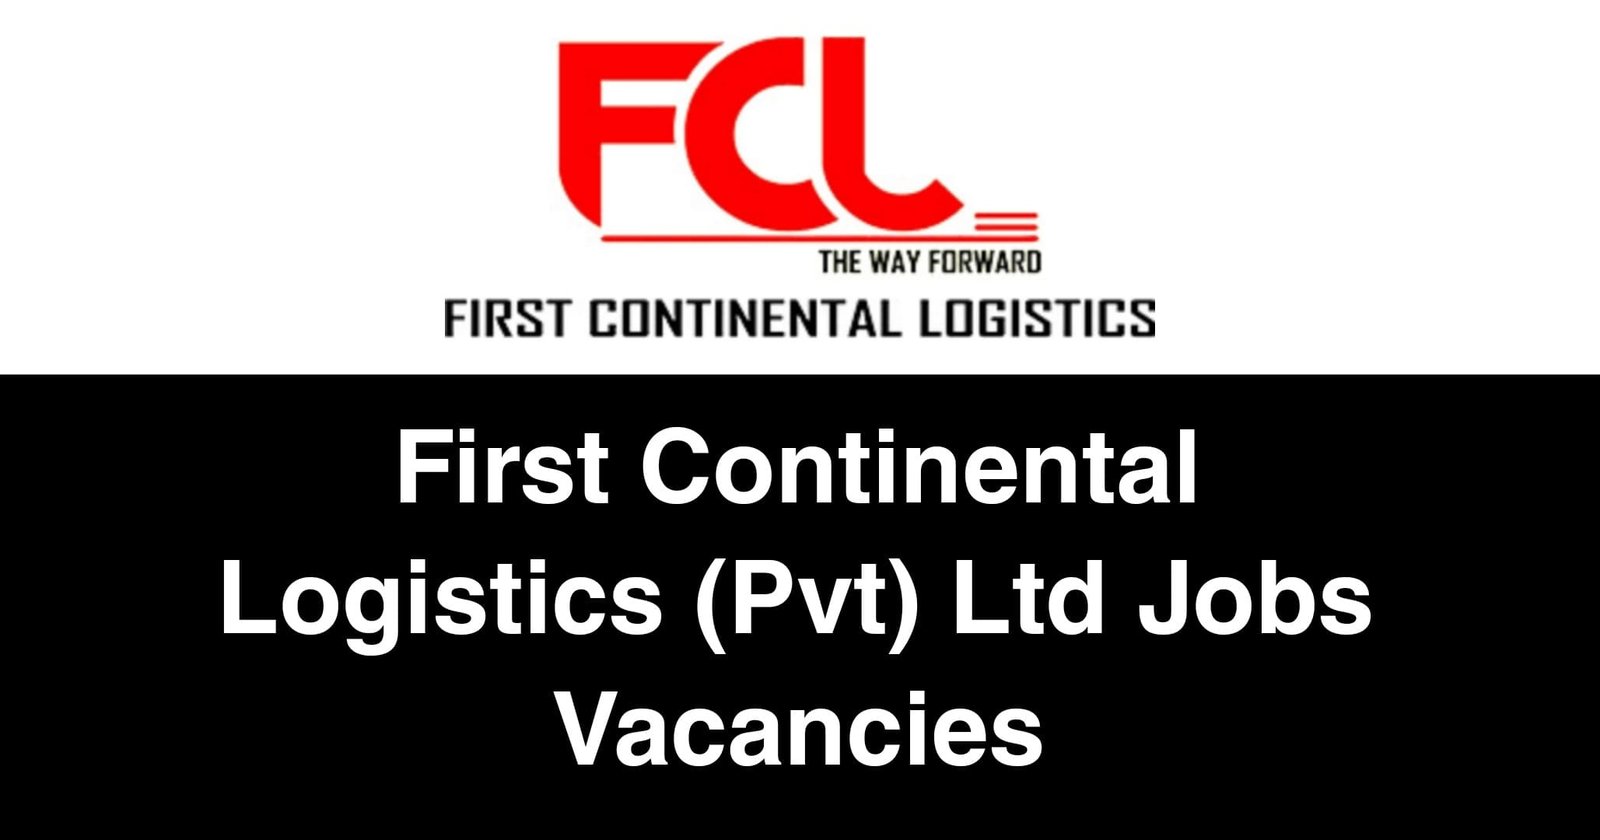 First Continental Logistics (Pvt) Ltd Jobs Vacancies